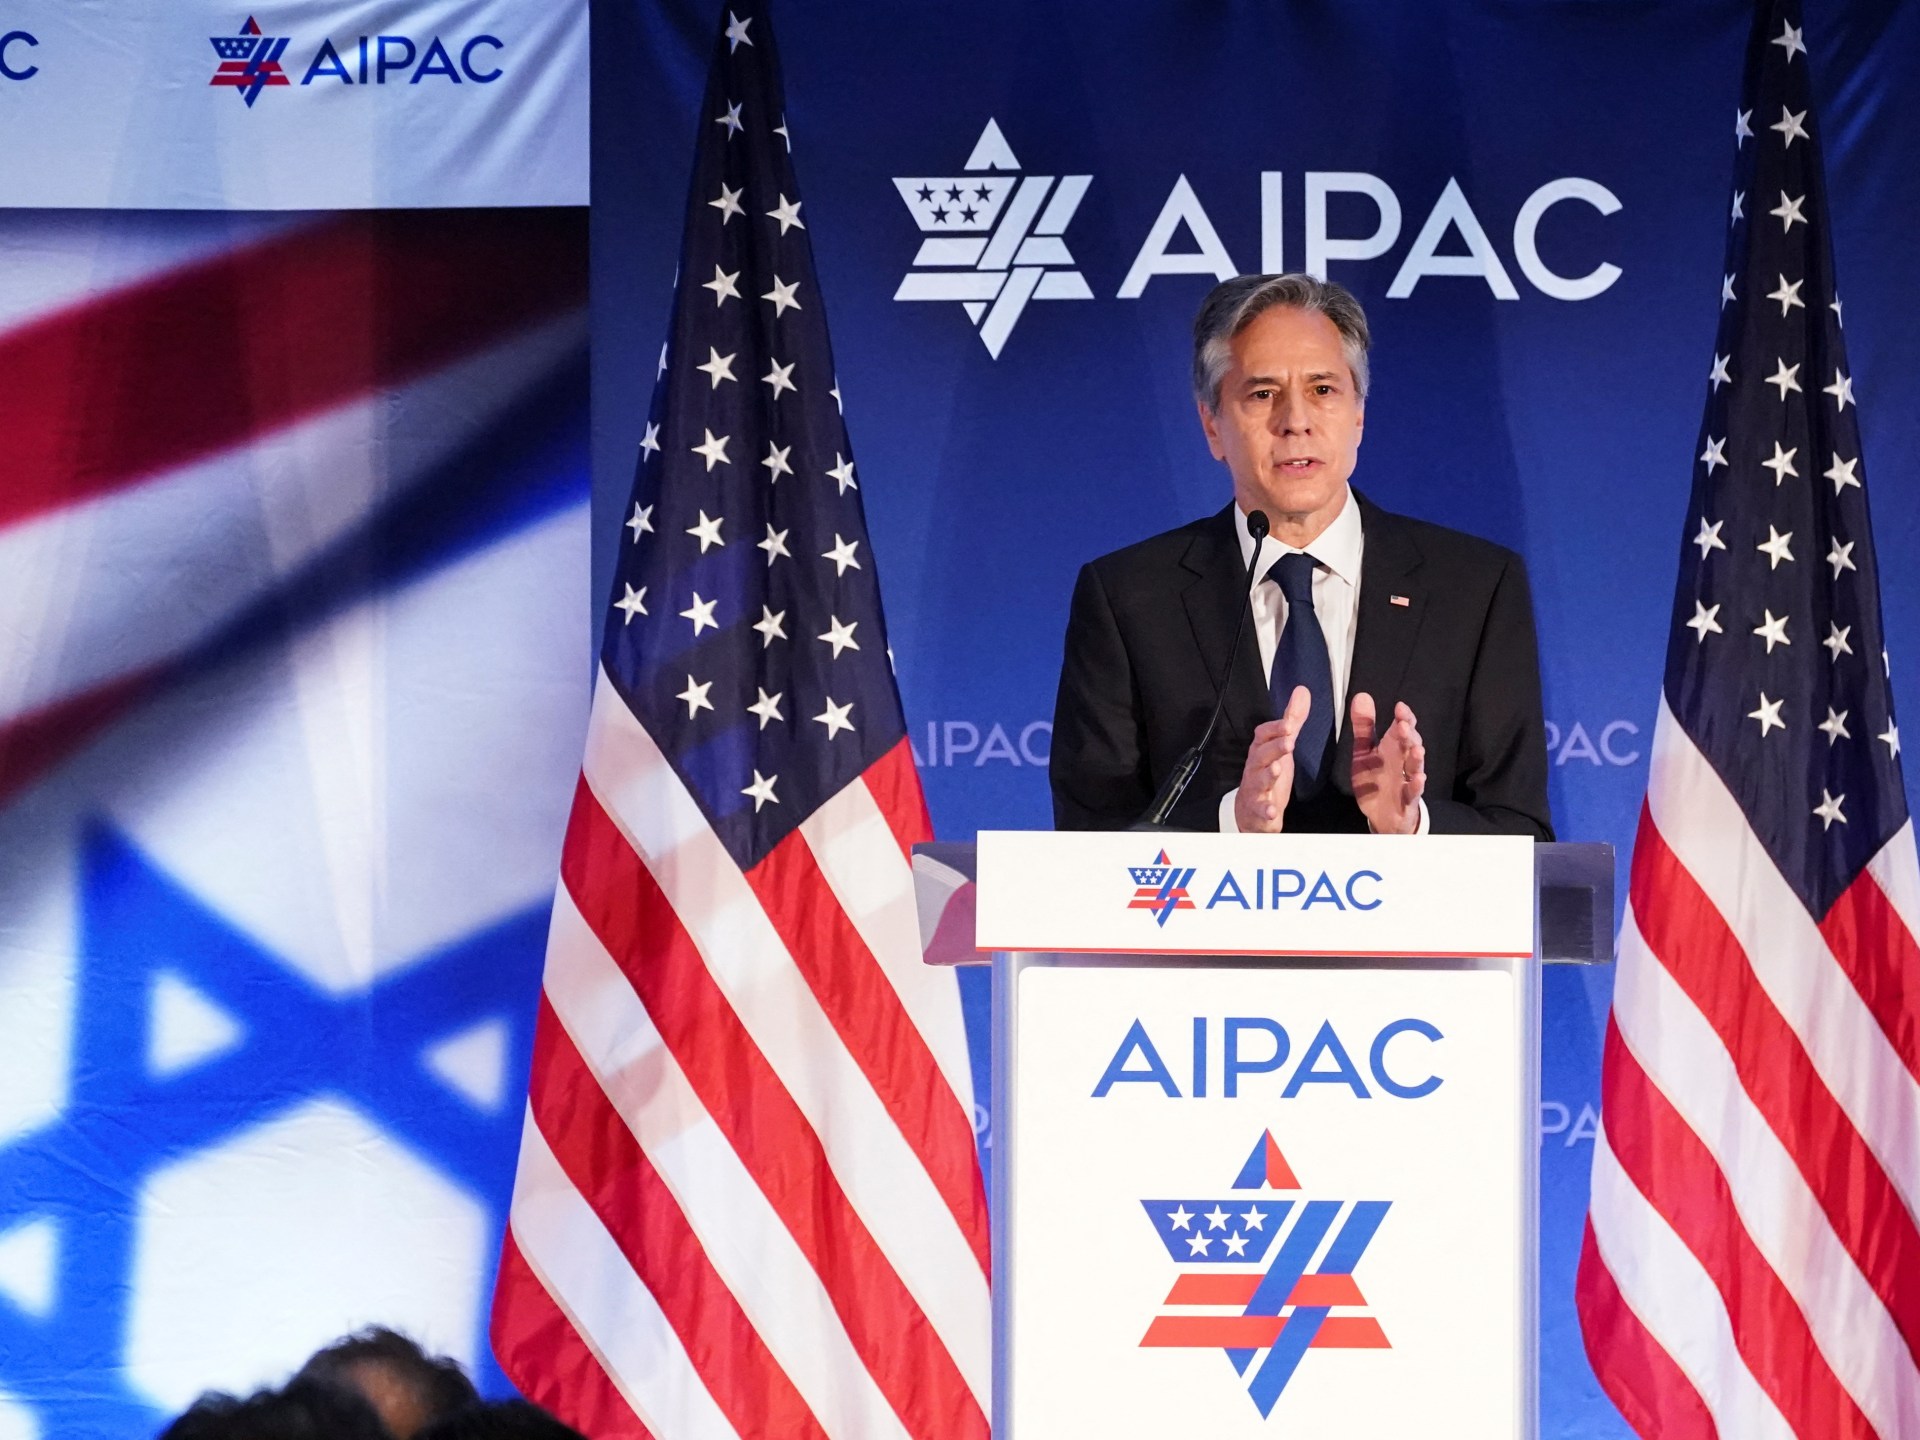 AS berkomitmen untuk normalisasi Saudi-Israel, kata Blinken kepada AIPAC |  Berita konflik Israel-Palestina